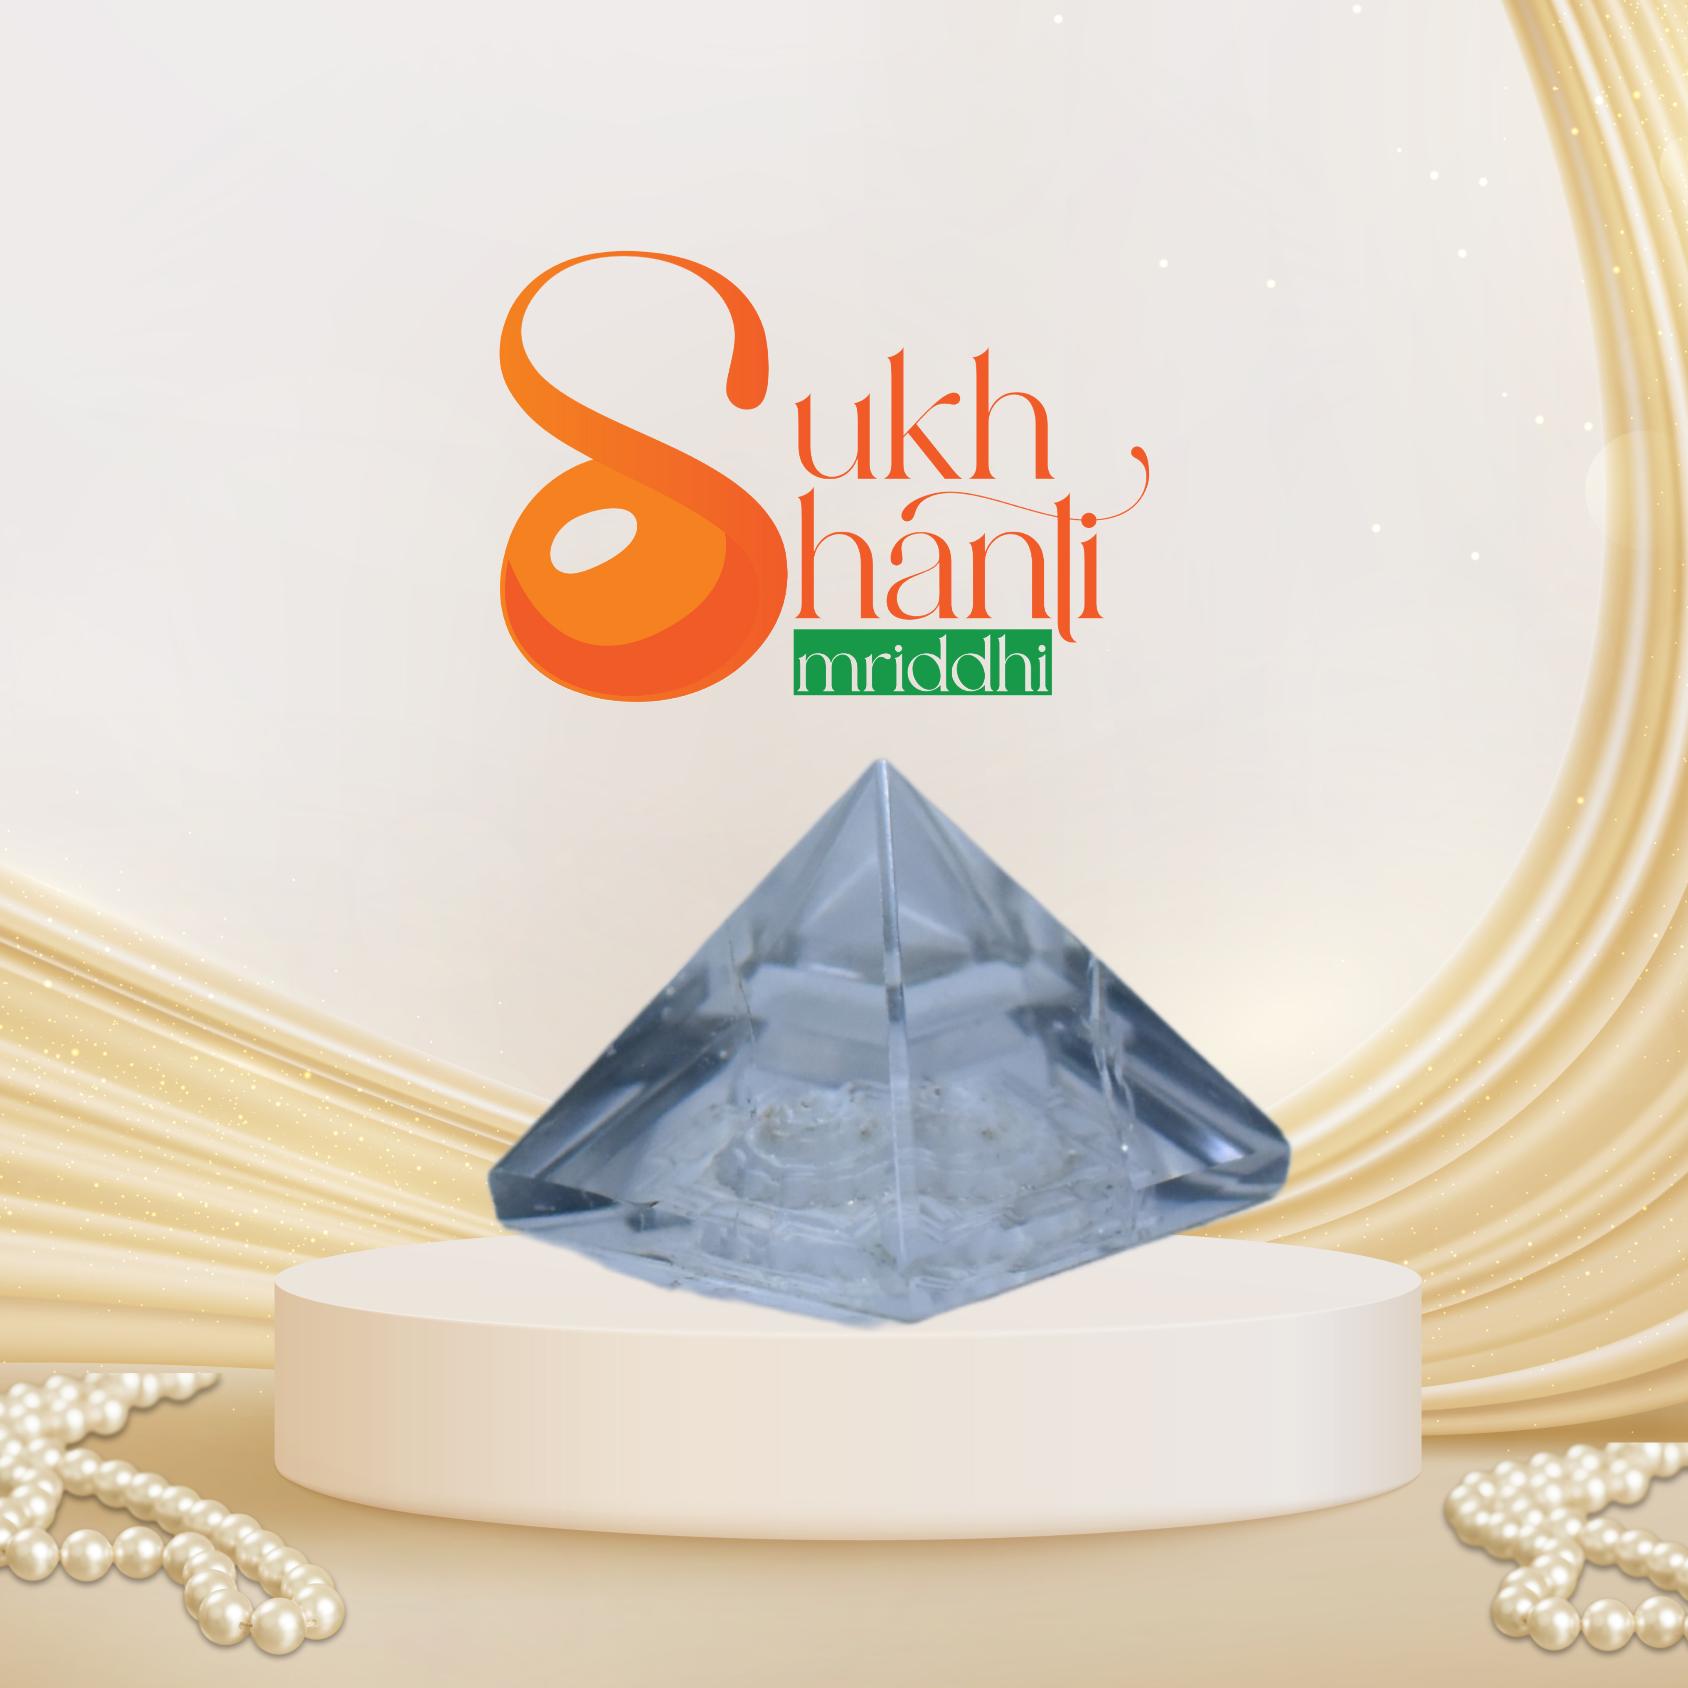 Sphatik Pyramid Shreeyantra: Illuminate Your Life with Sacred Energy - Sukh Shanti Smriddhi